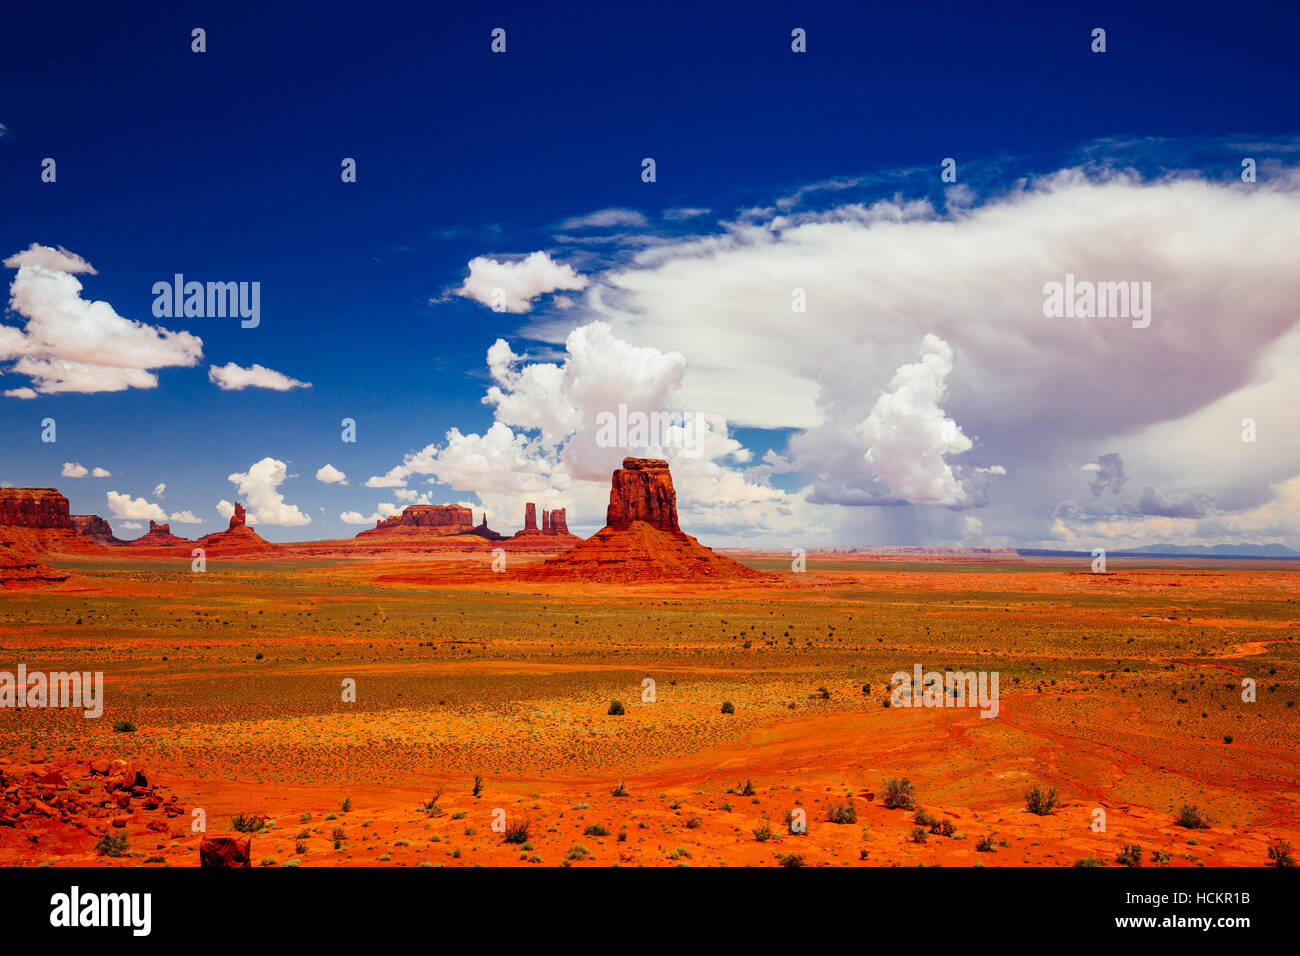 Monument Valley, Navajo Tribal Park, Arizona, USA Stock Photo